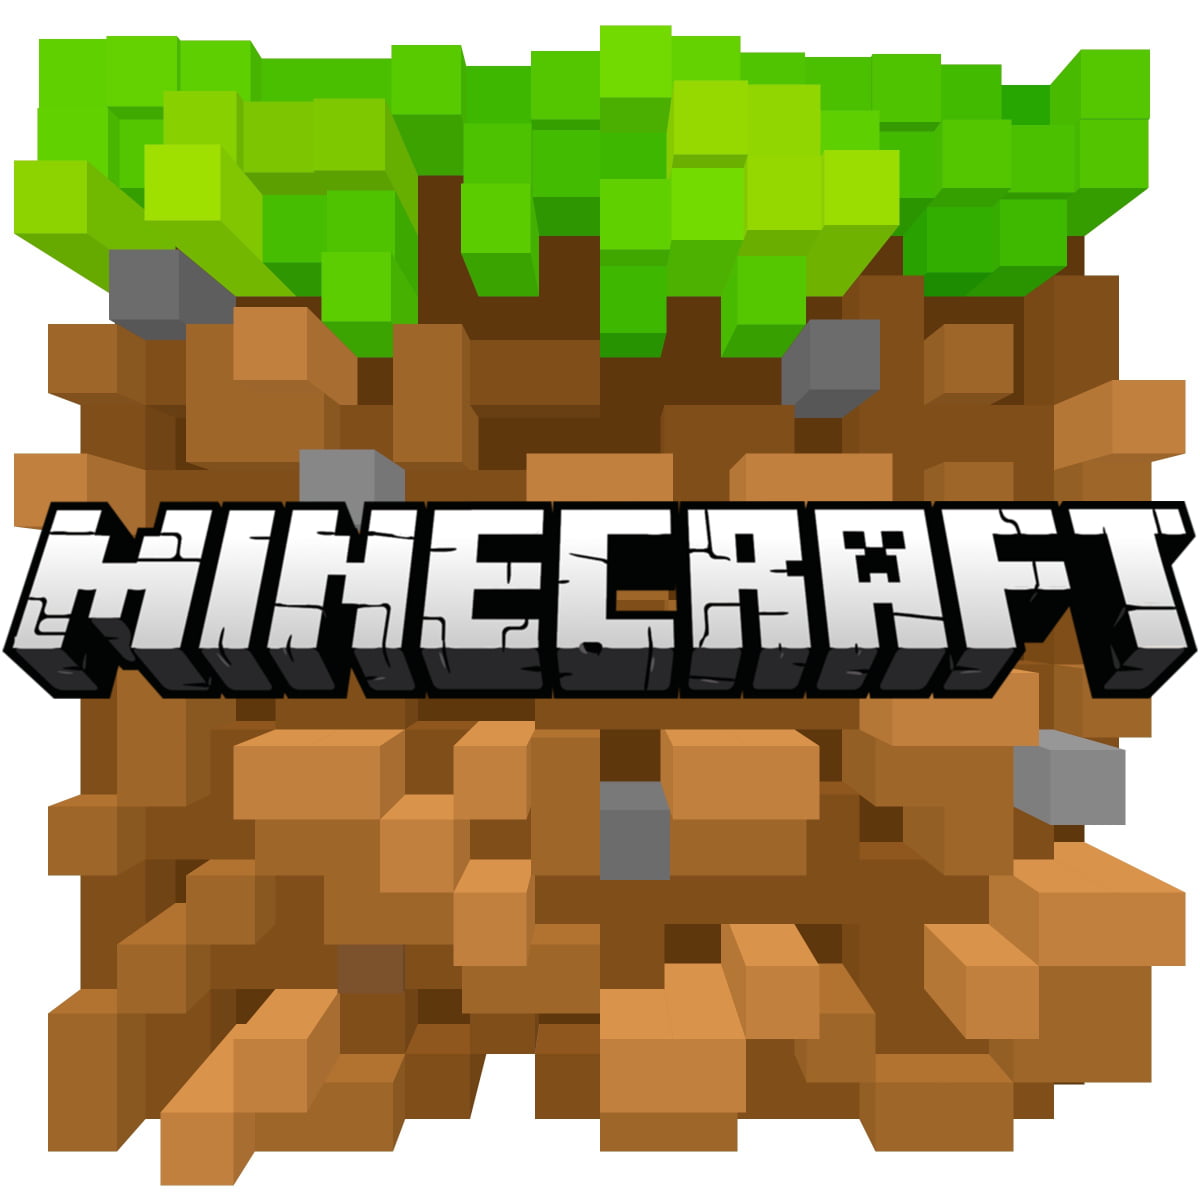 8 bit style logo that reads Minecraft